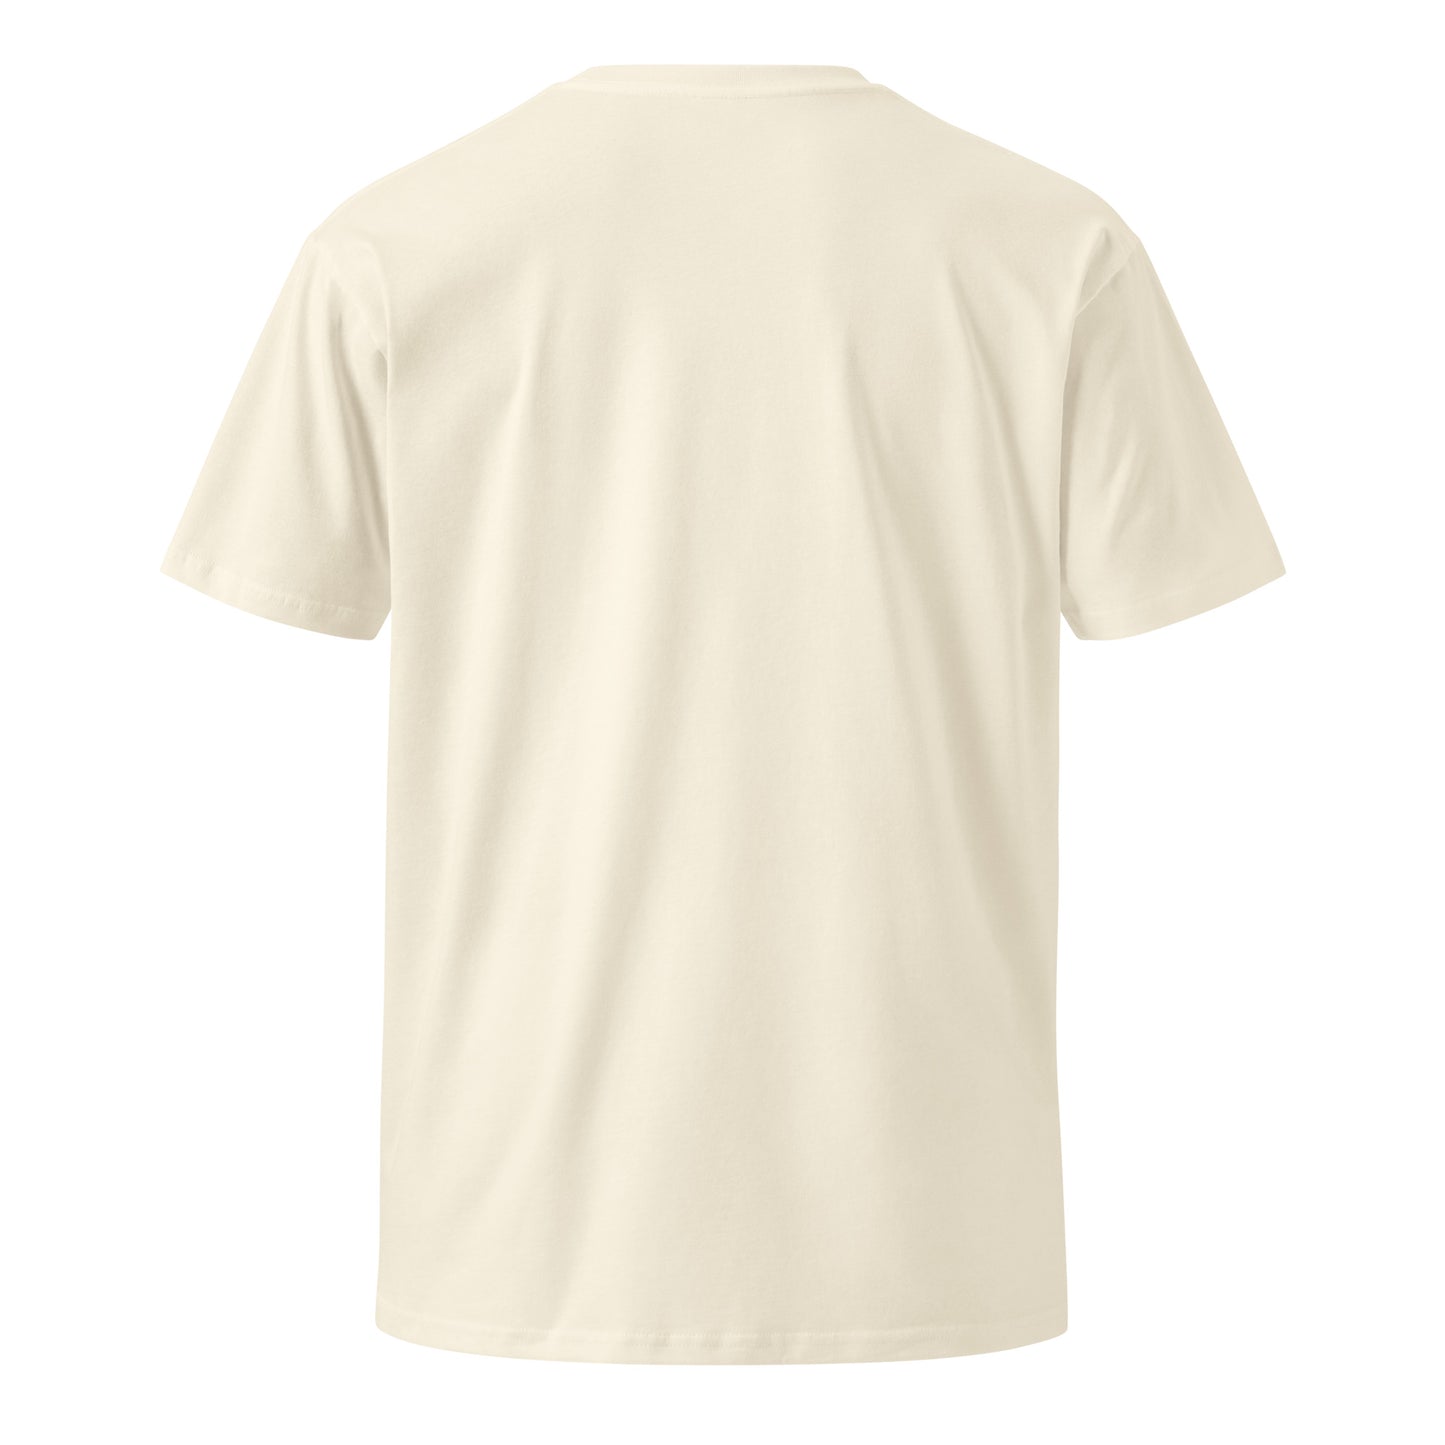 Unisex premium t-shirt - Posi Edition